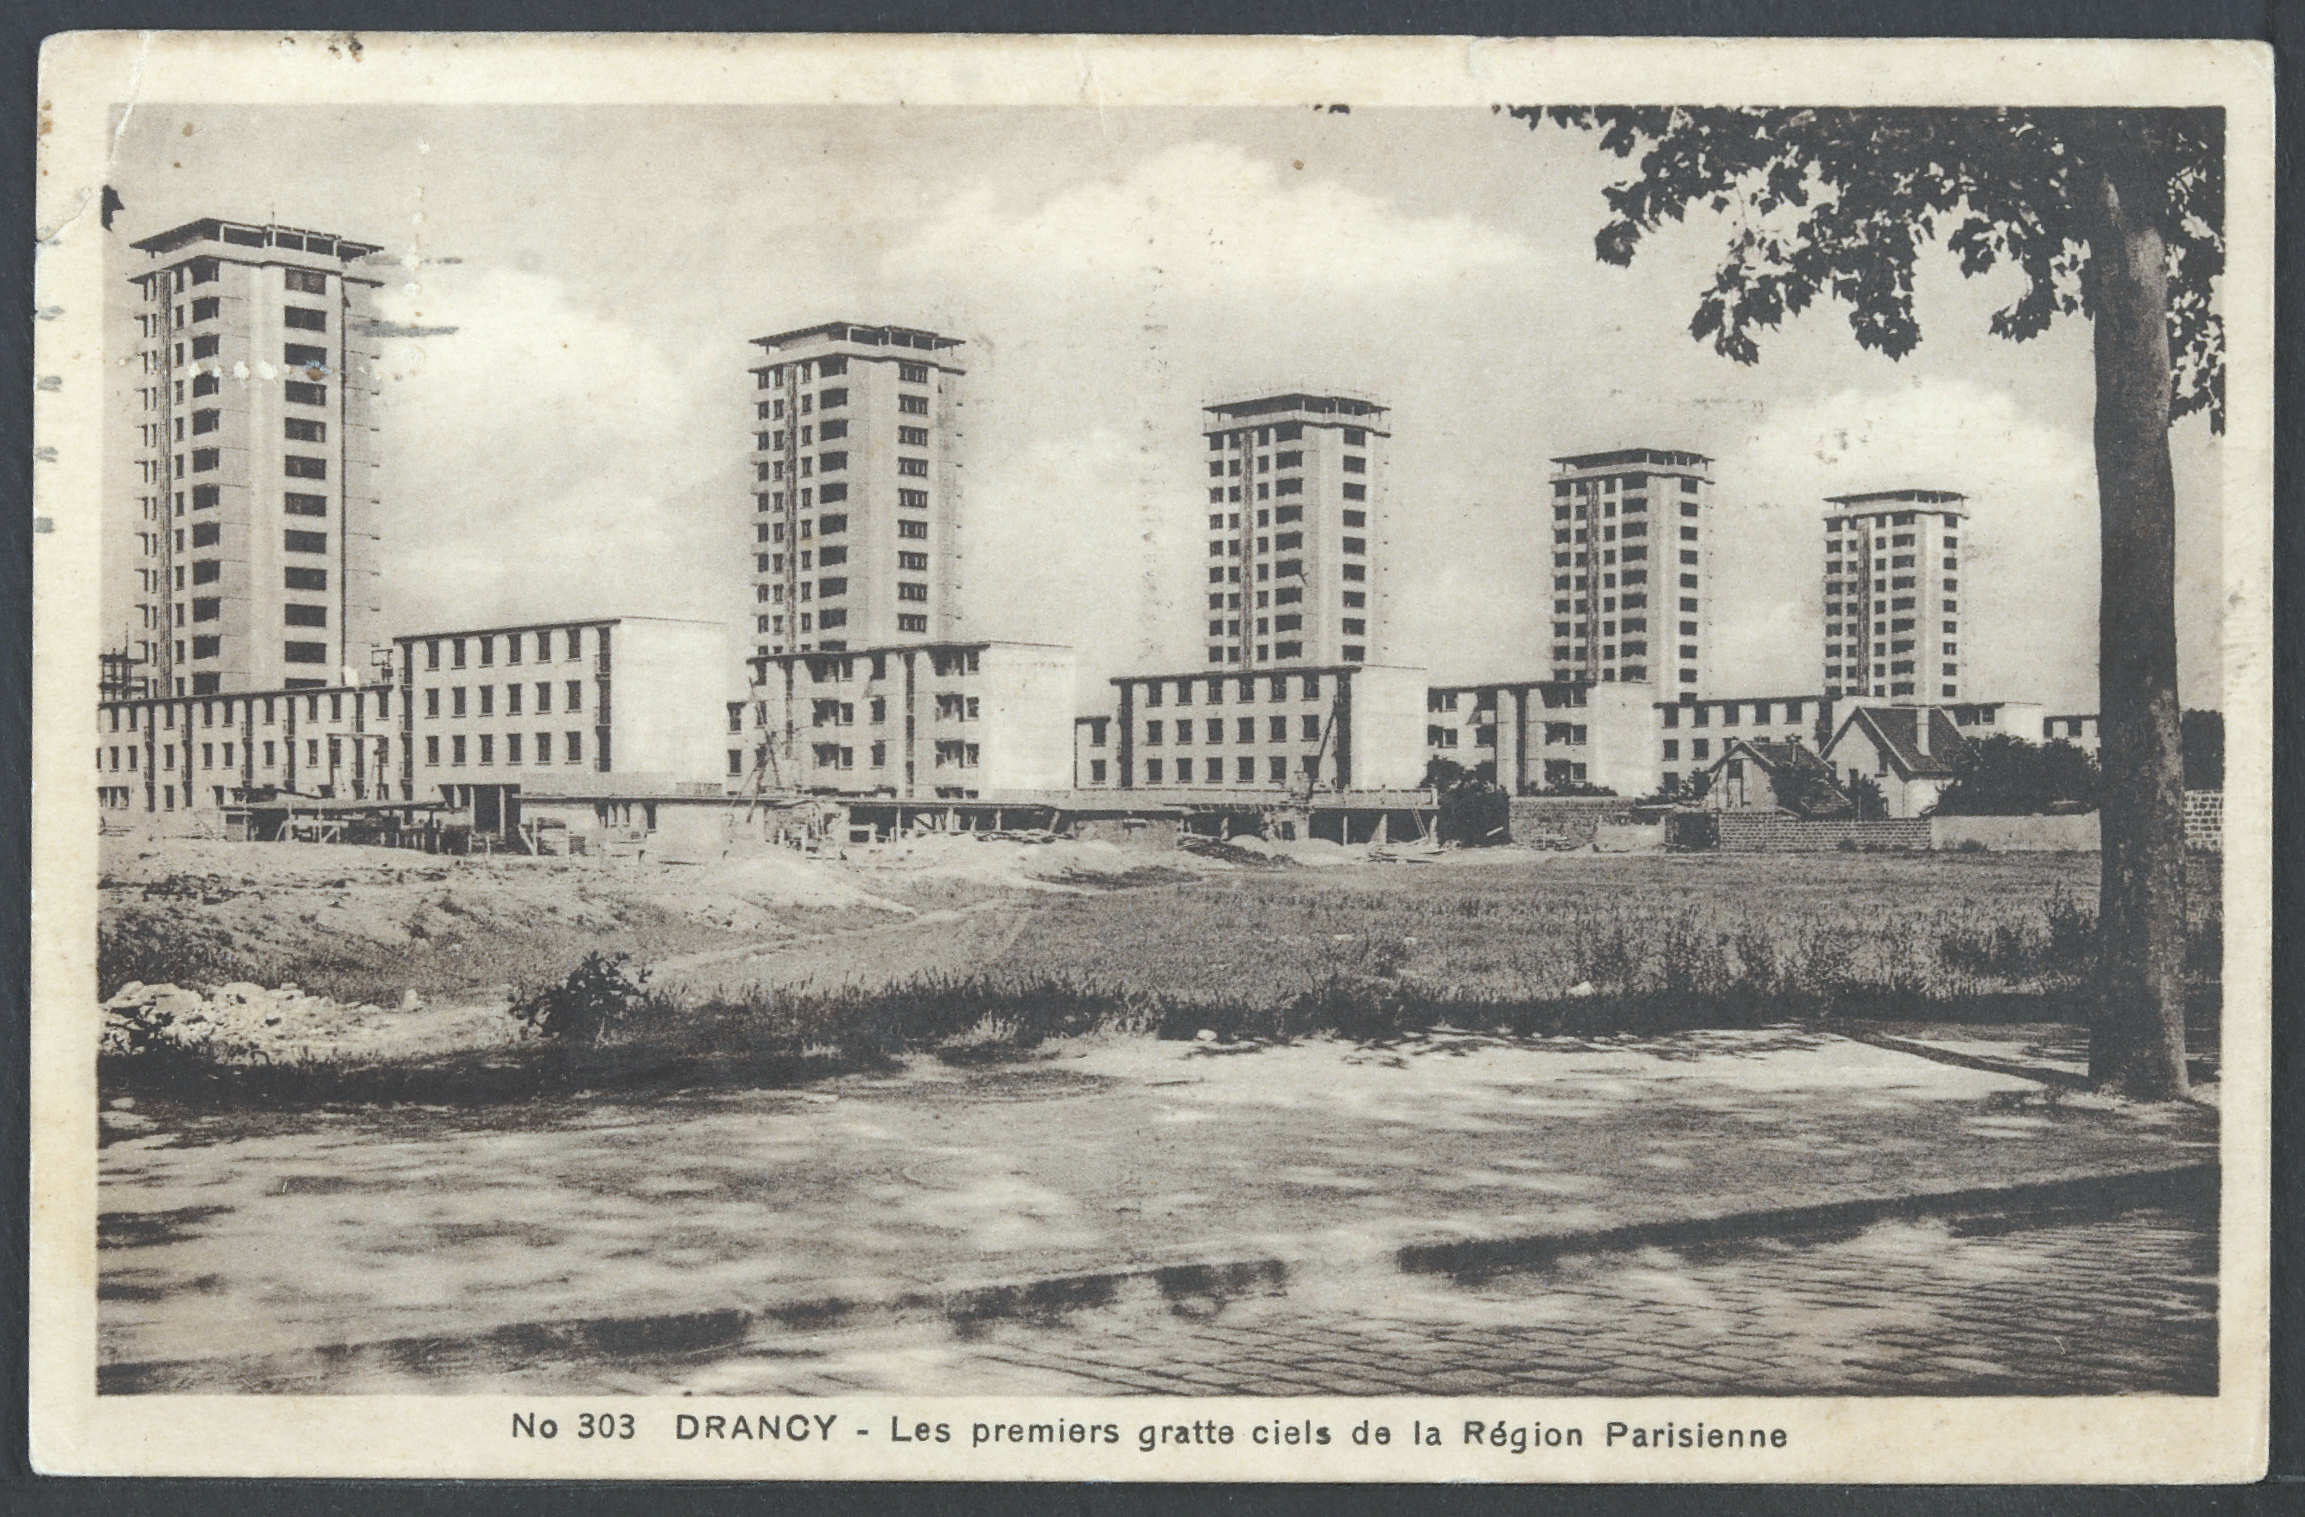 Les gratte-ciel oublis de la cit de la Muette (1931-1976)